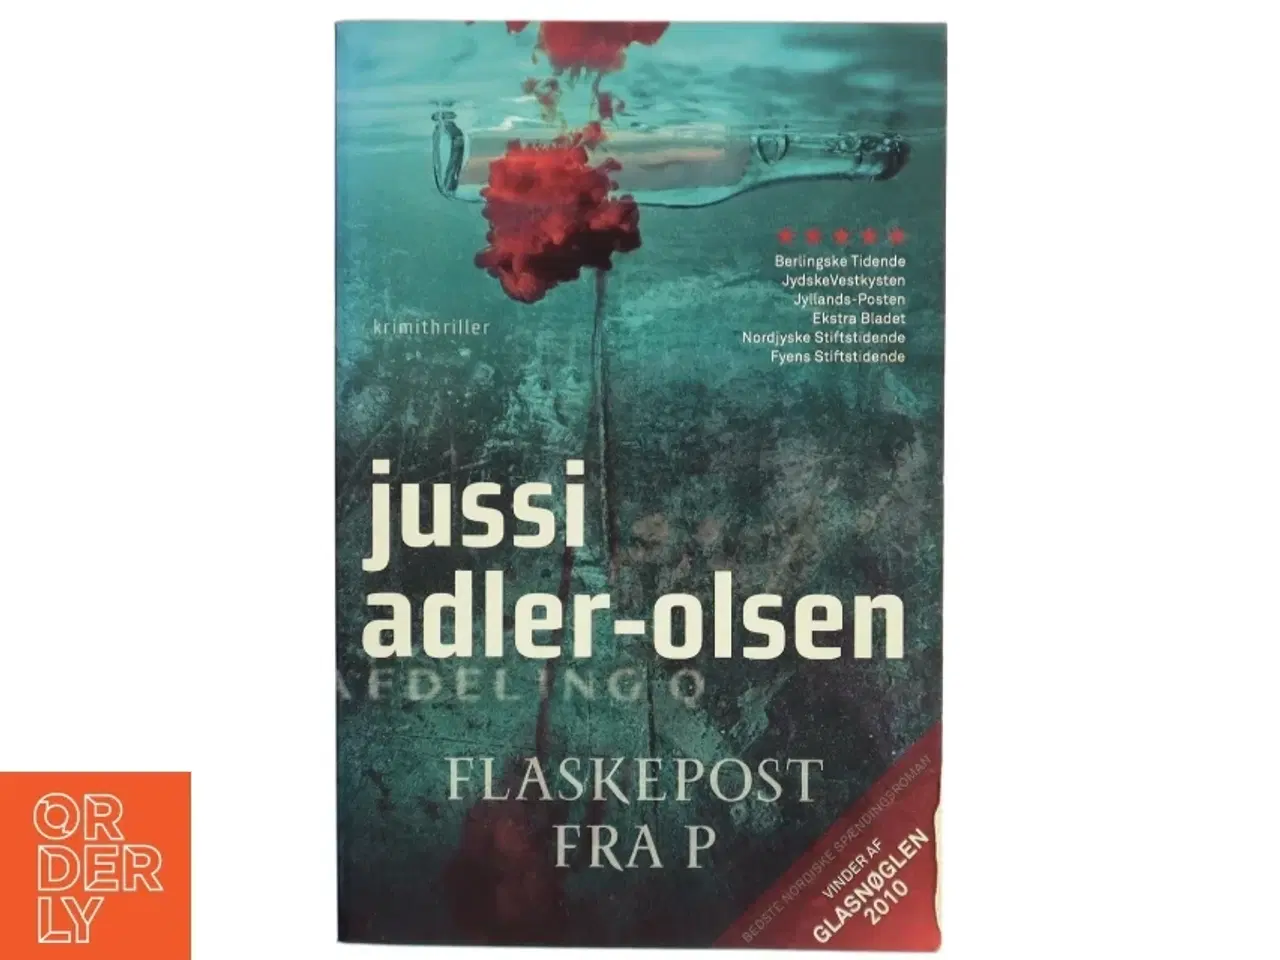 Billede 1 - Flaskepost fra P af Jussi Adler-Olsen (Bog)